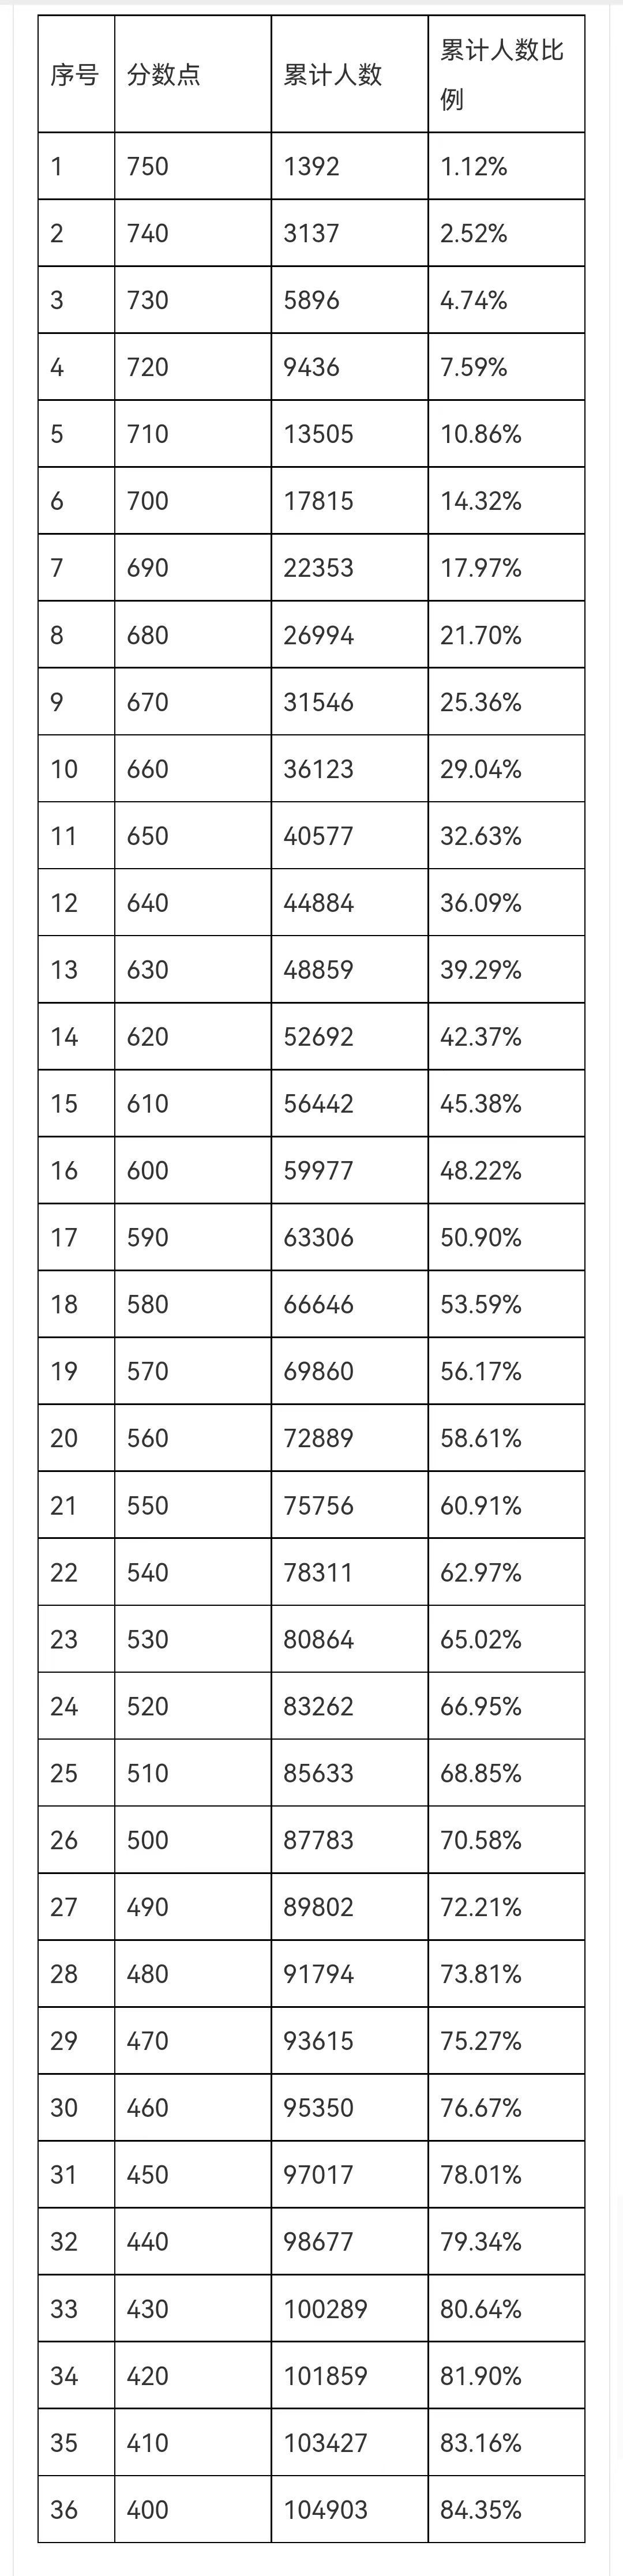 广州中考成绩全市排名 分数段统计表